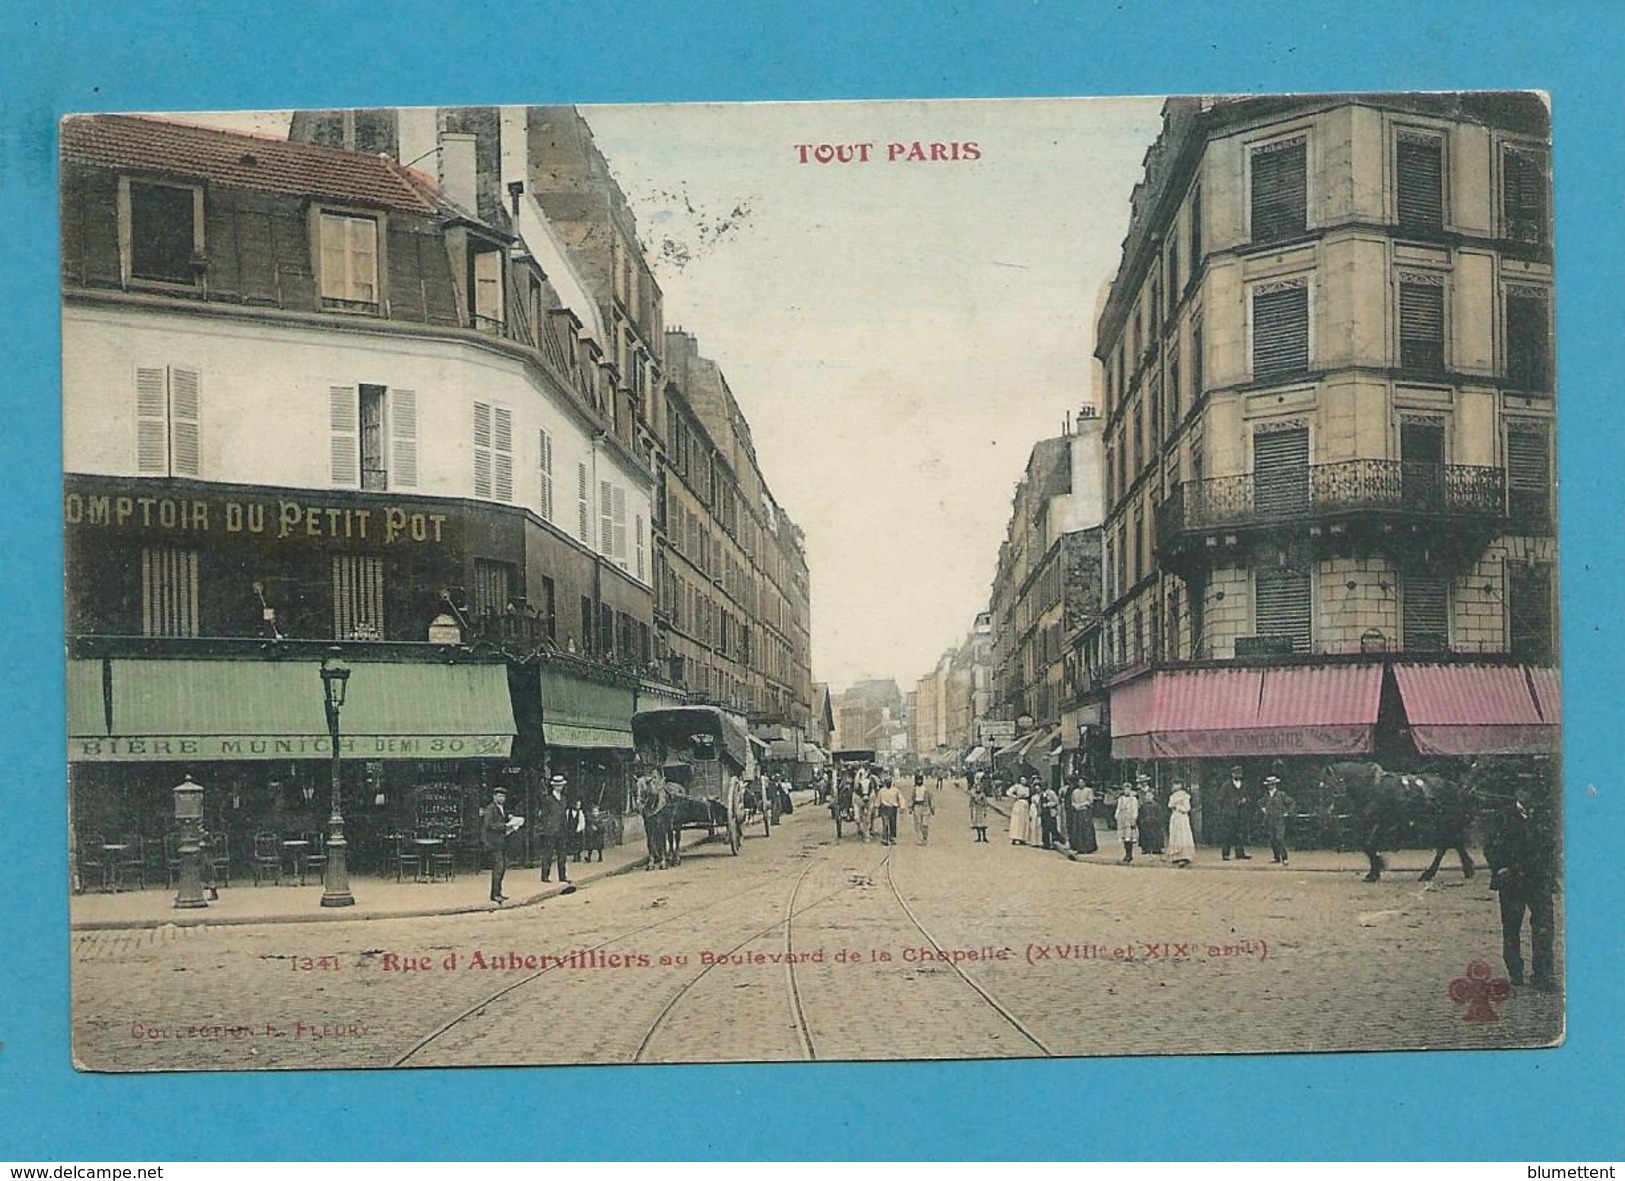 CPA TOUT PARIS 1341 - Rue D'Aubervilliers (XVIIIème Arrt.) Ed. FLEURY - Distretto: 18